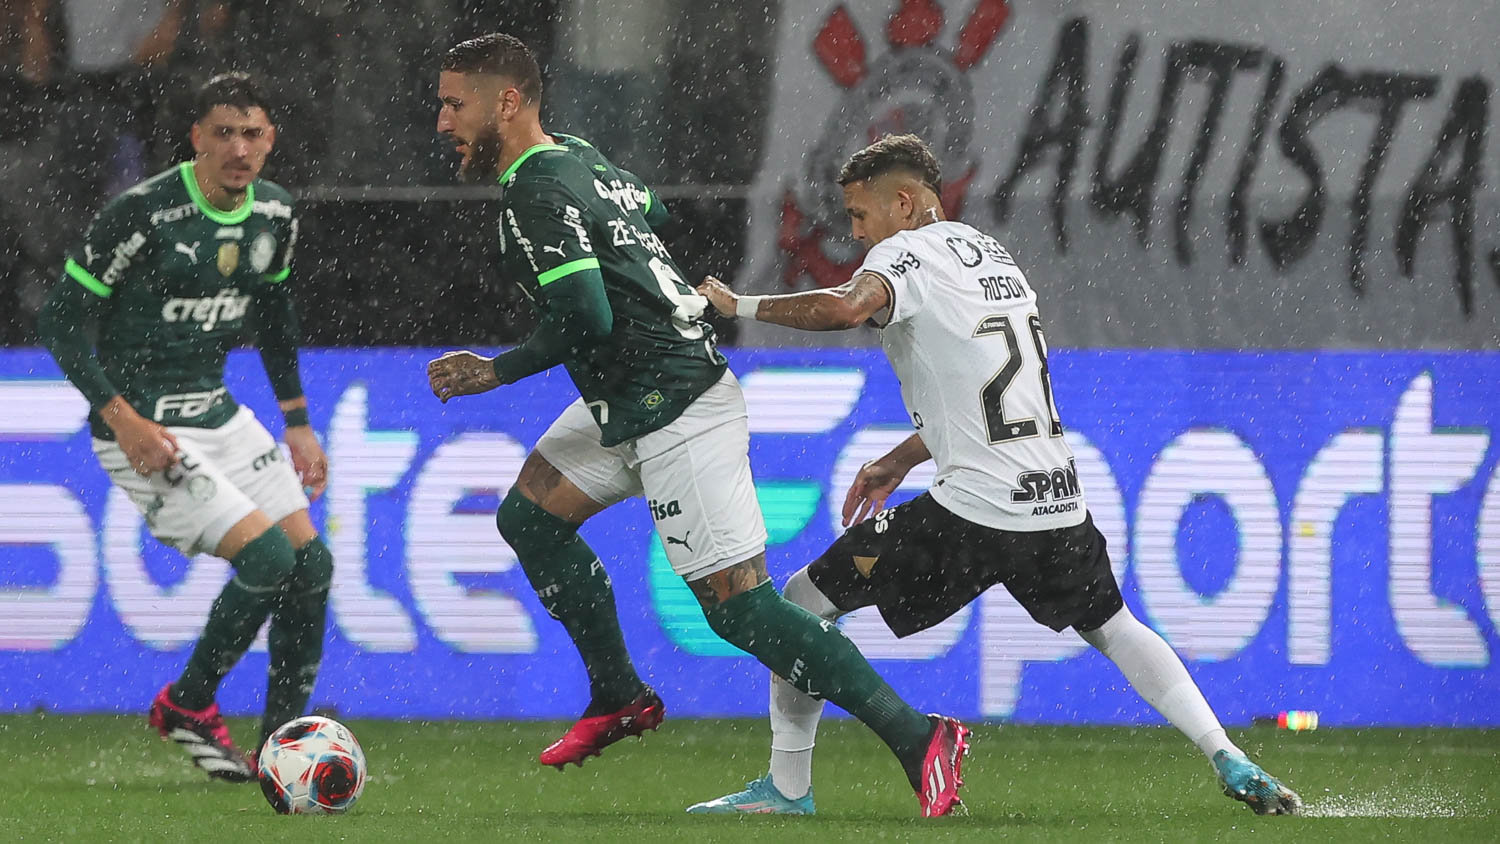 Palmeiras vs Corinthians in action